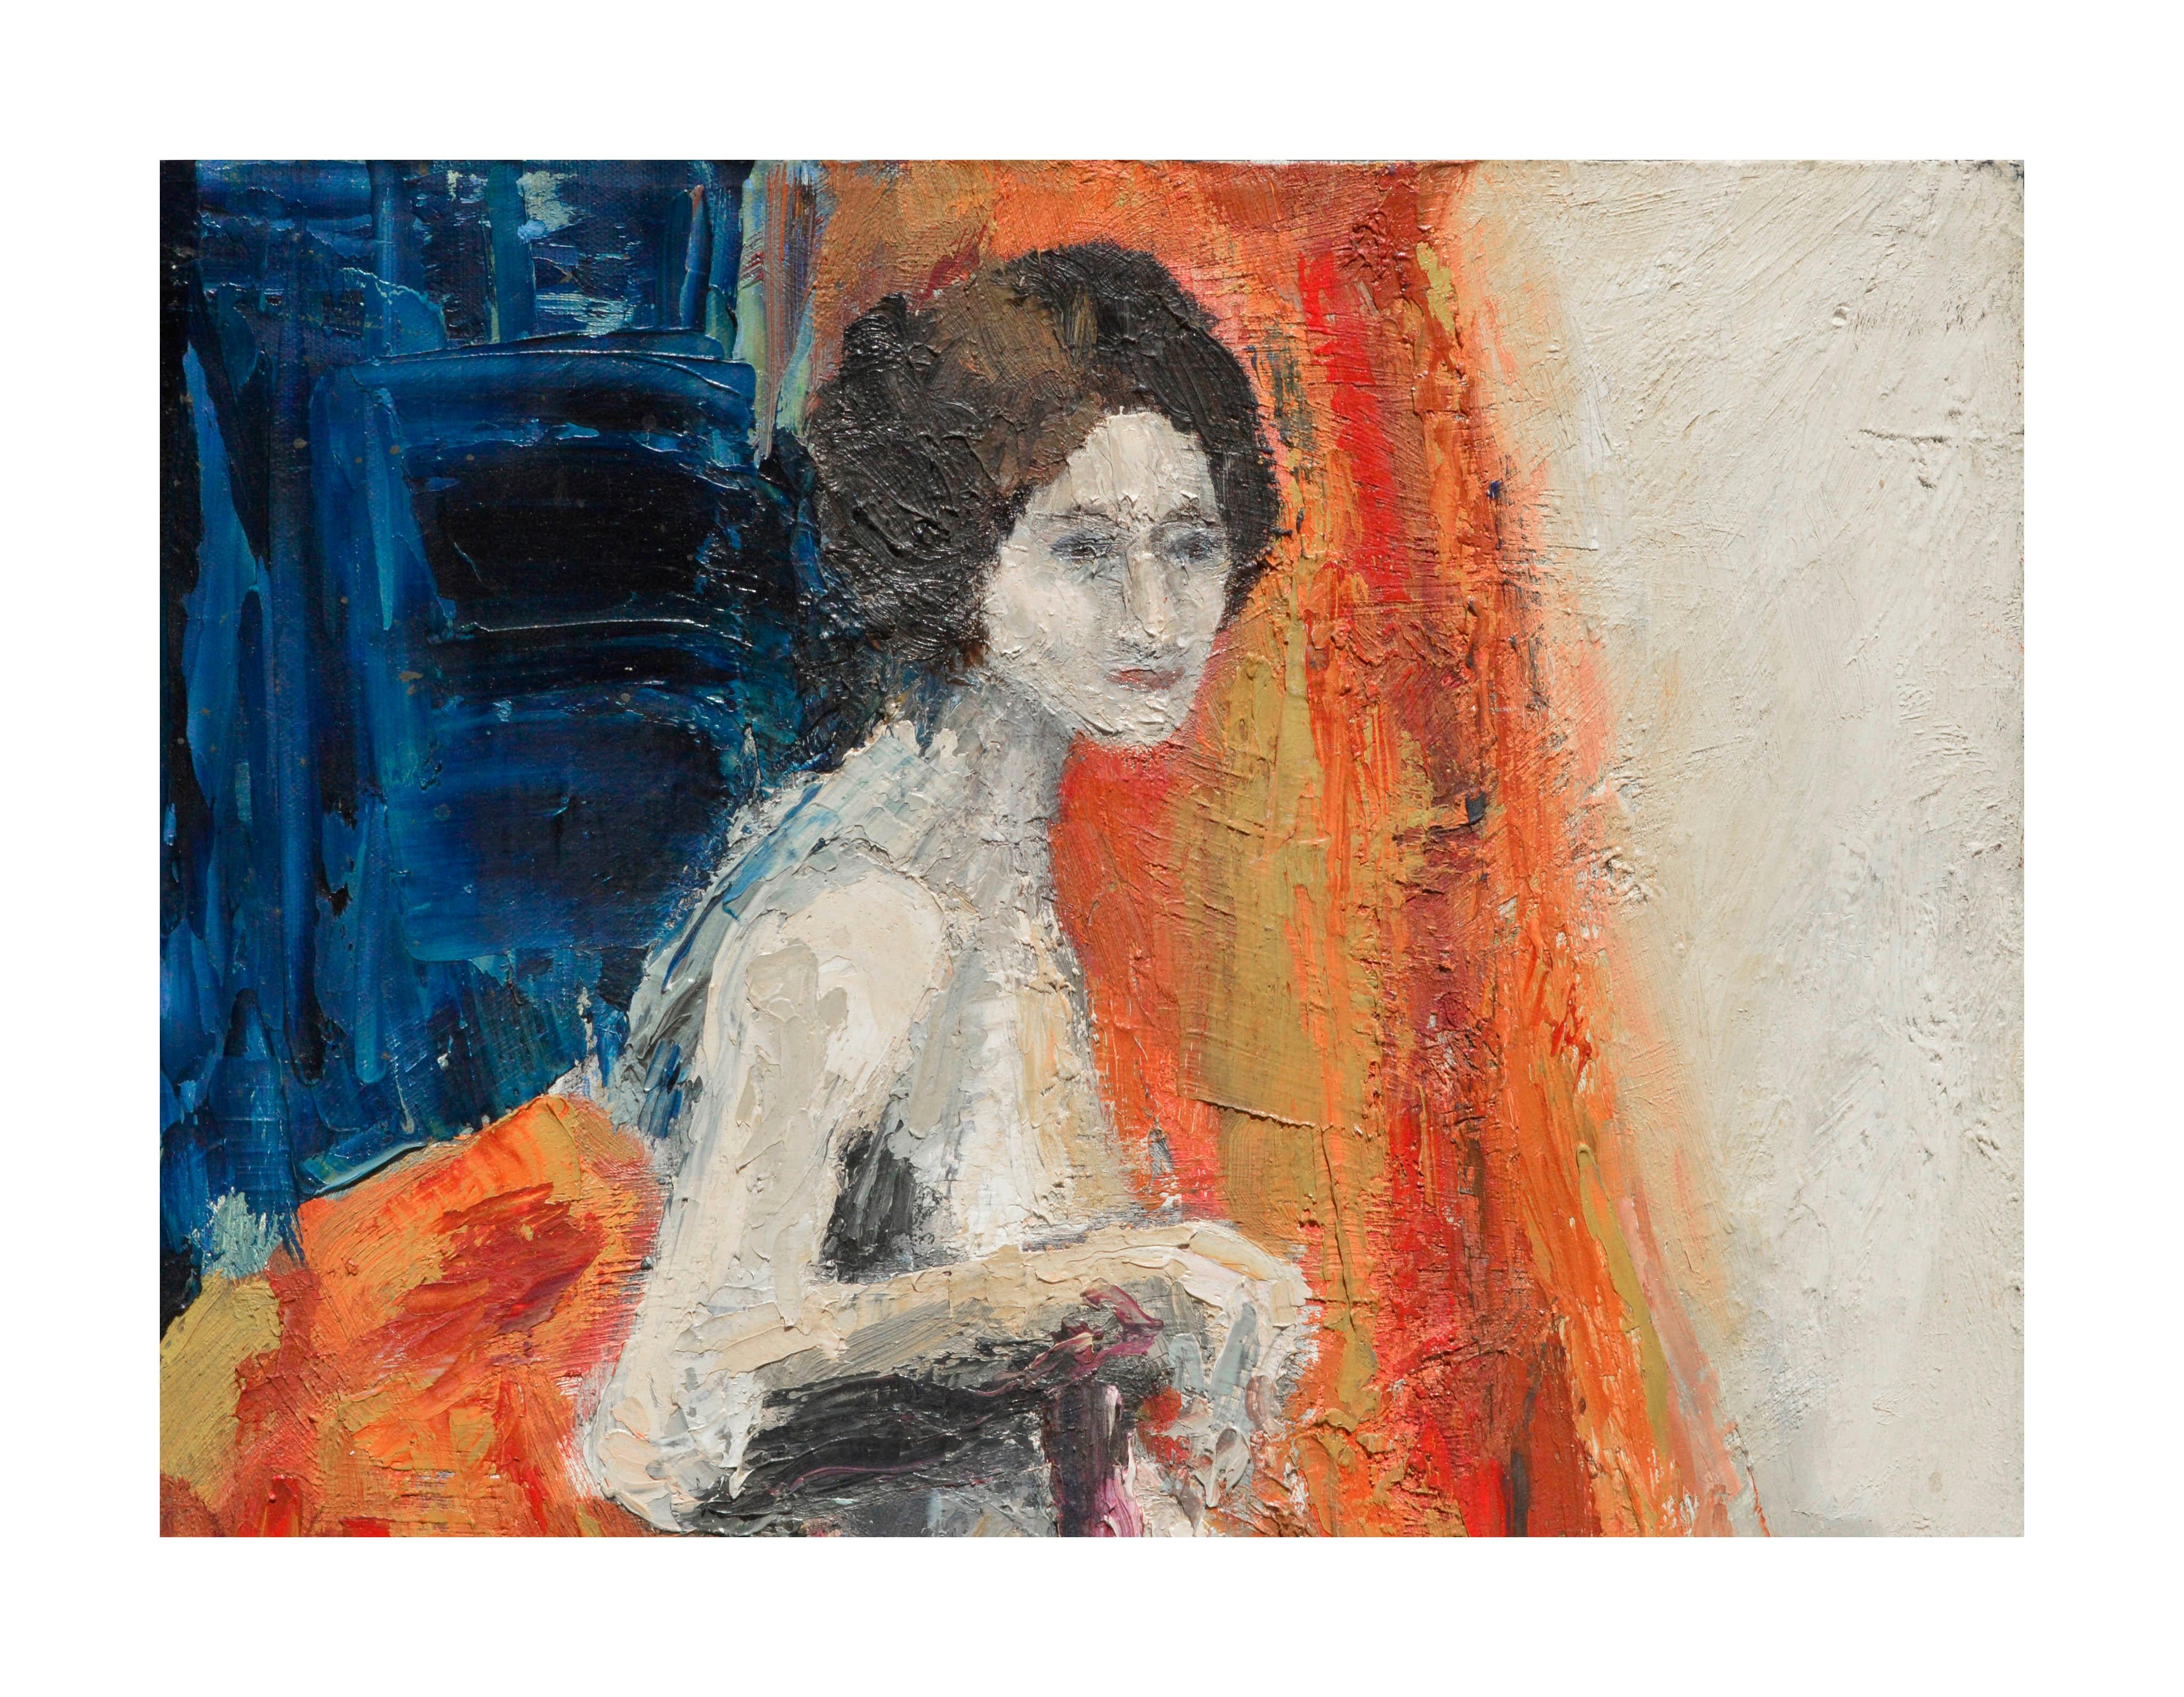 Abstrakt-expressionistische figurative sitzende nackte Frau, abstrakt – Painting von Unknown